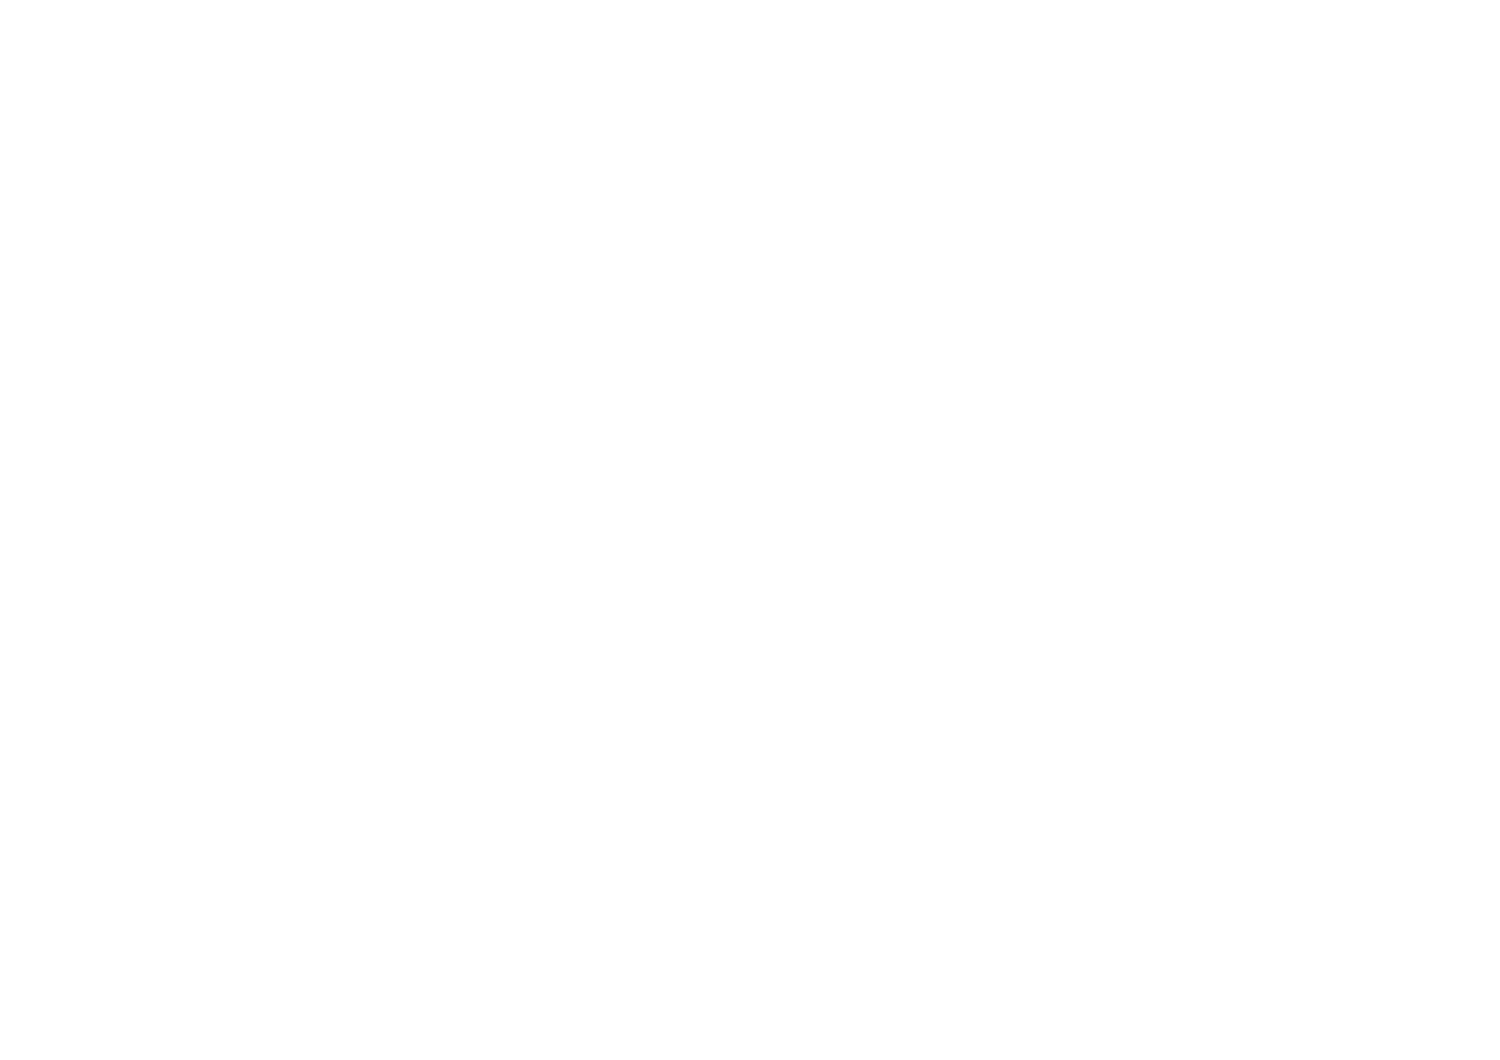 Seattle Bartending Co. 